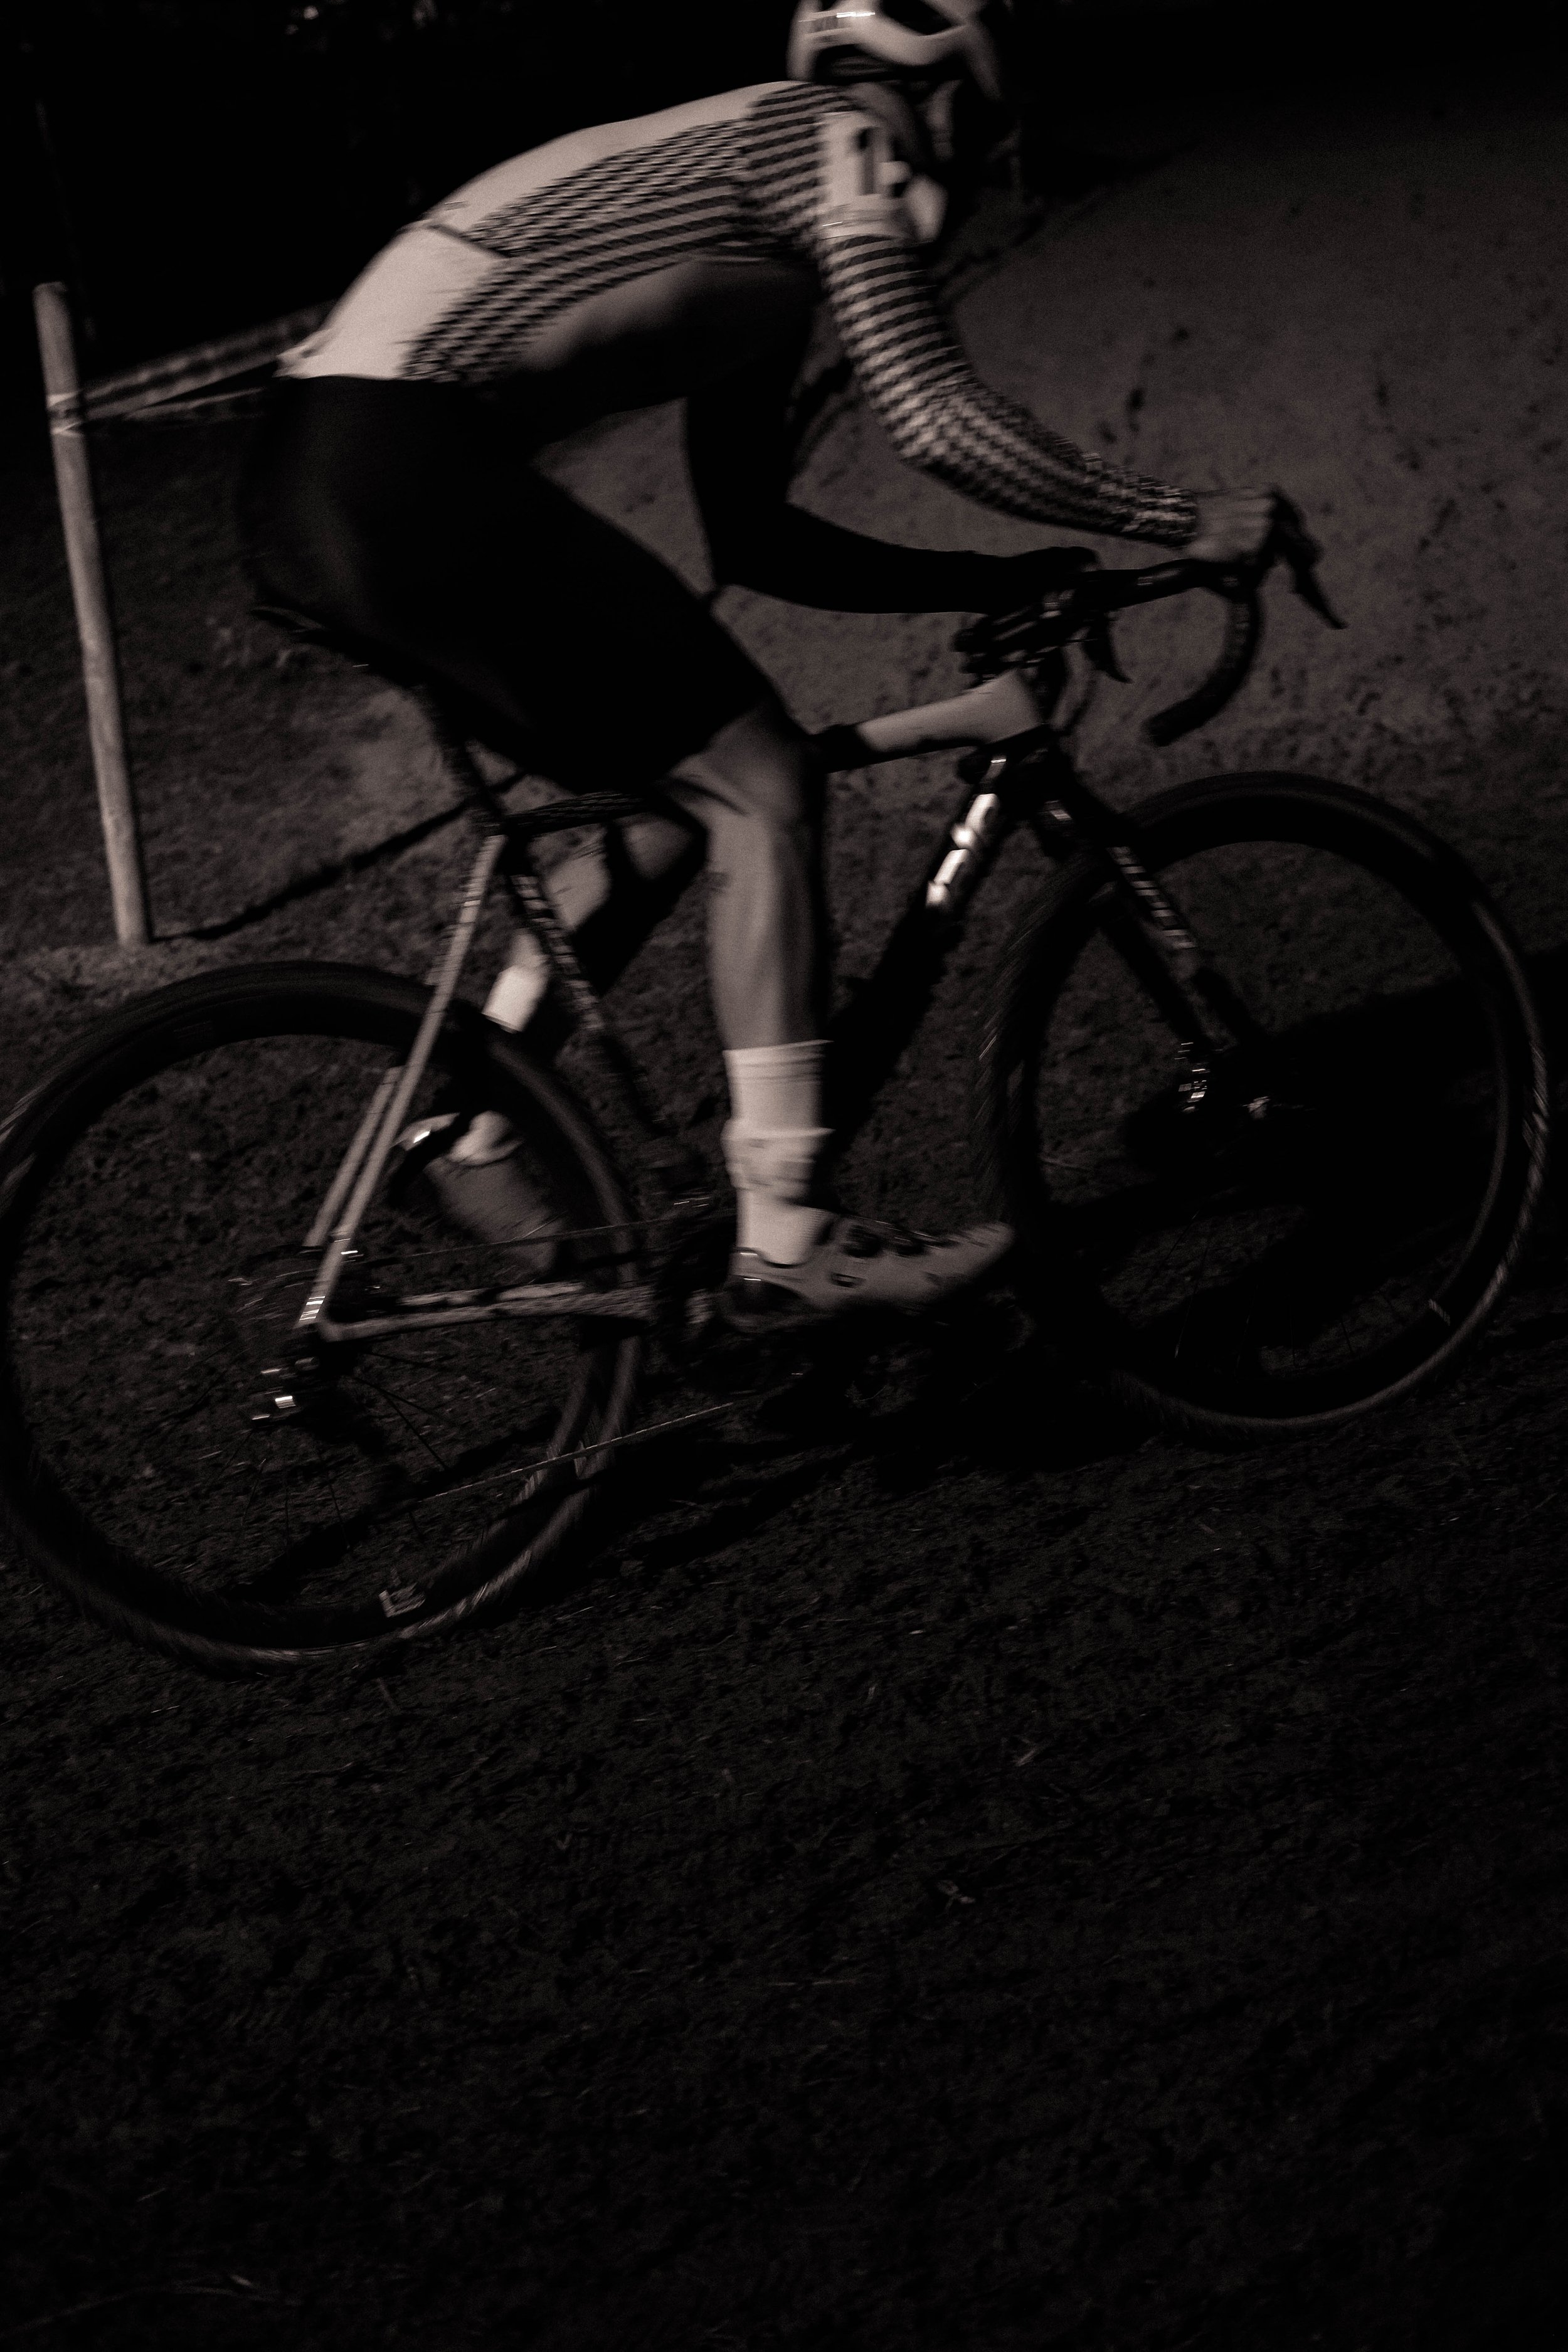 darkcross 21 turocycling-29.jpg